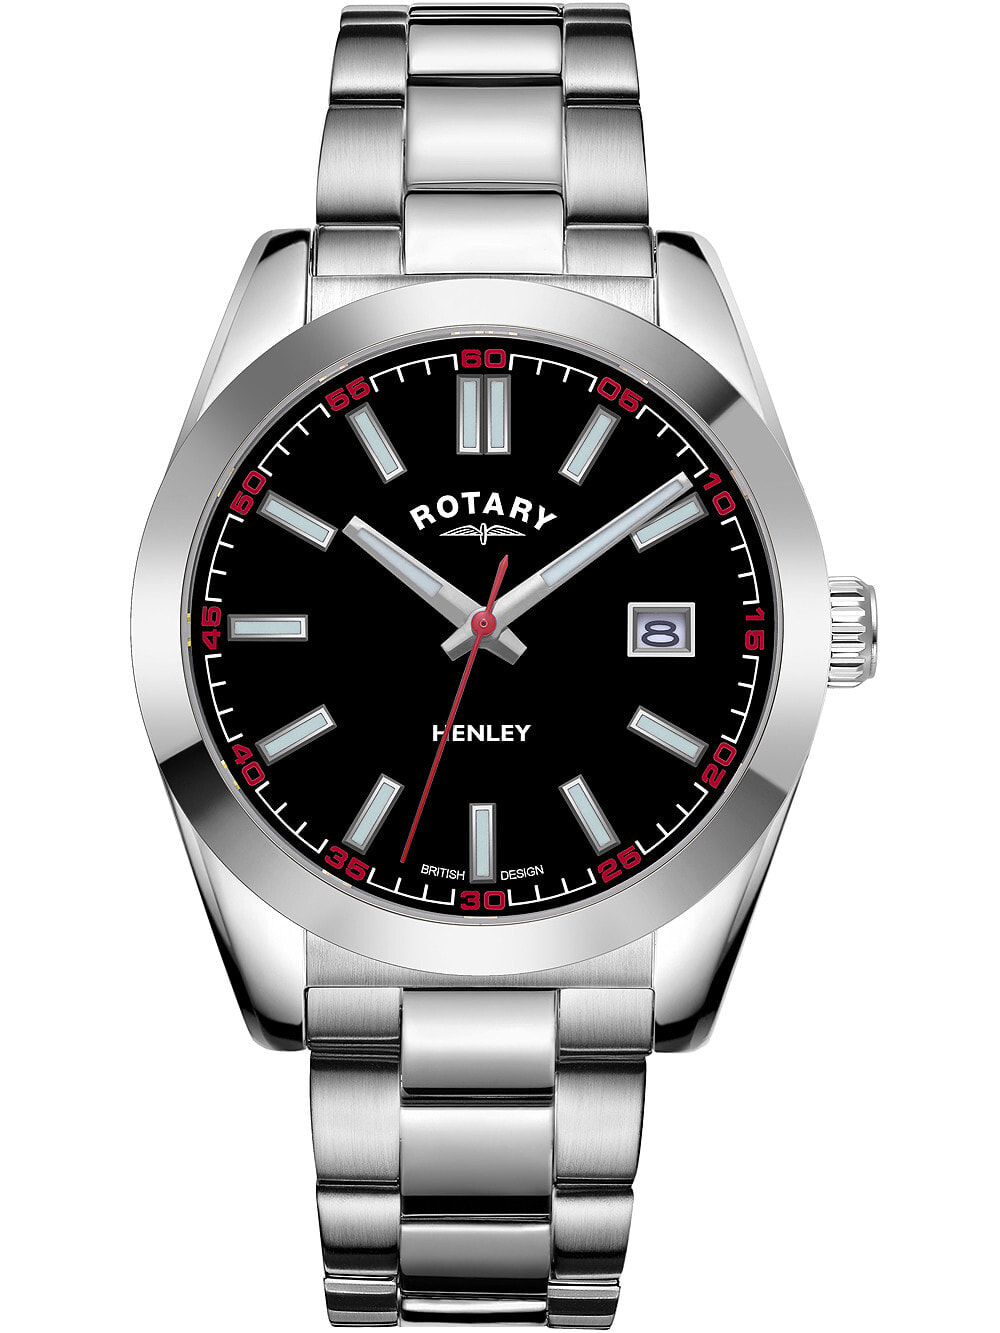 Мужские наручные часы с серебряным браслетом Rotary GB05180/04 Henley mens 40mm 10ATM